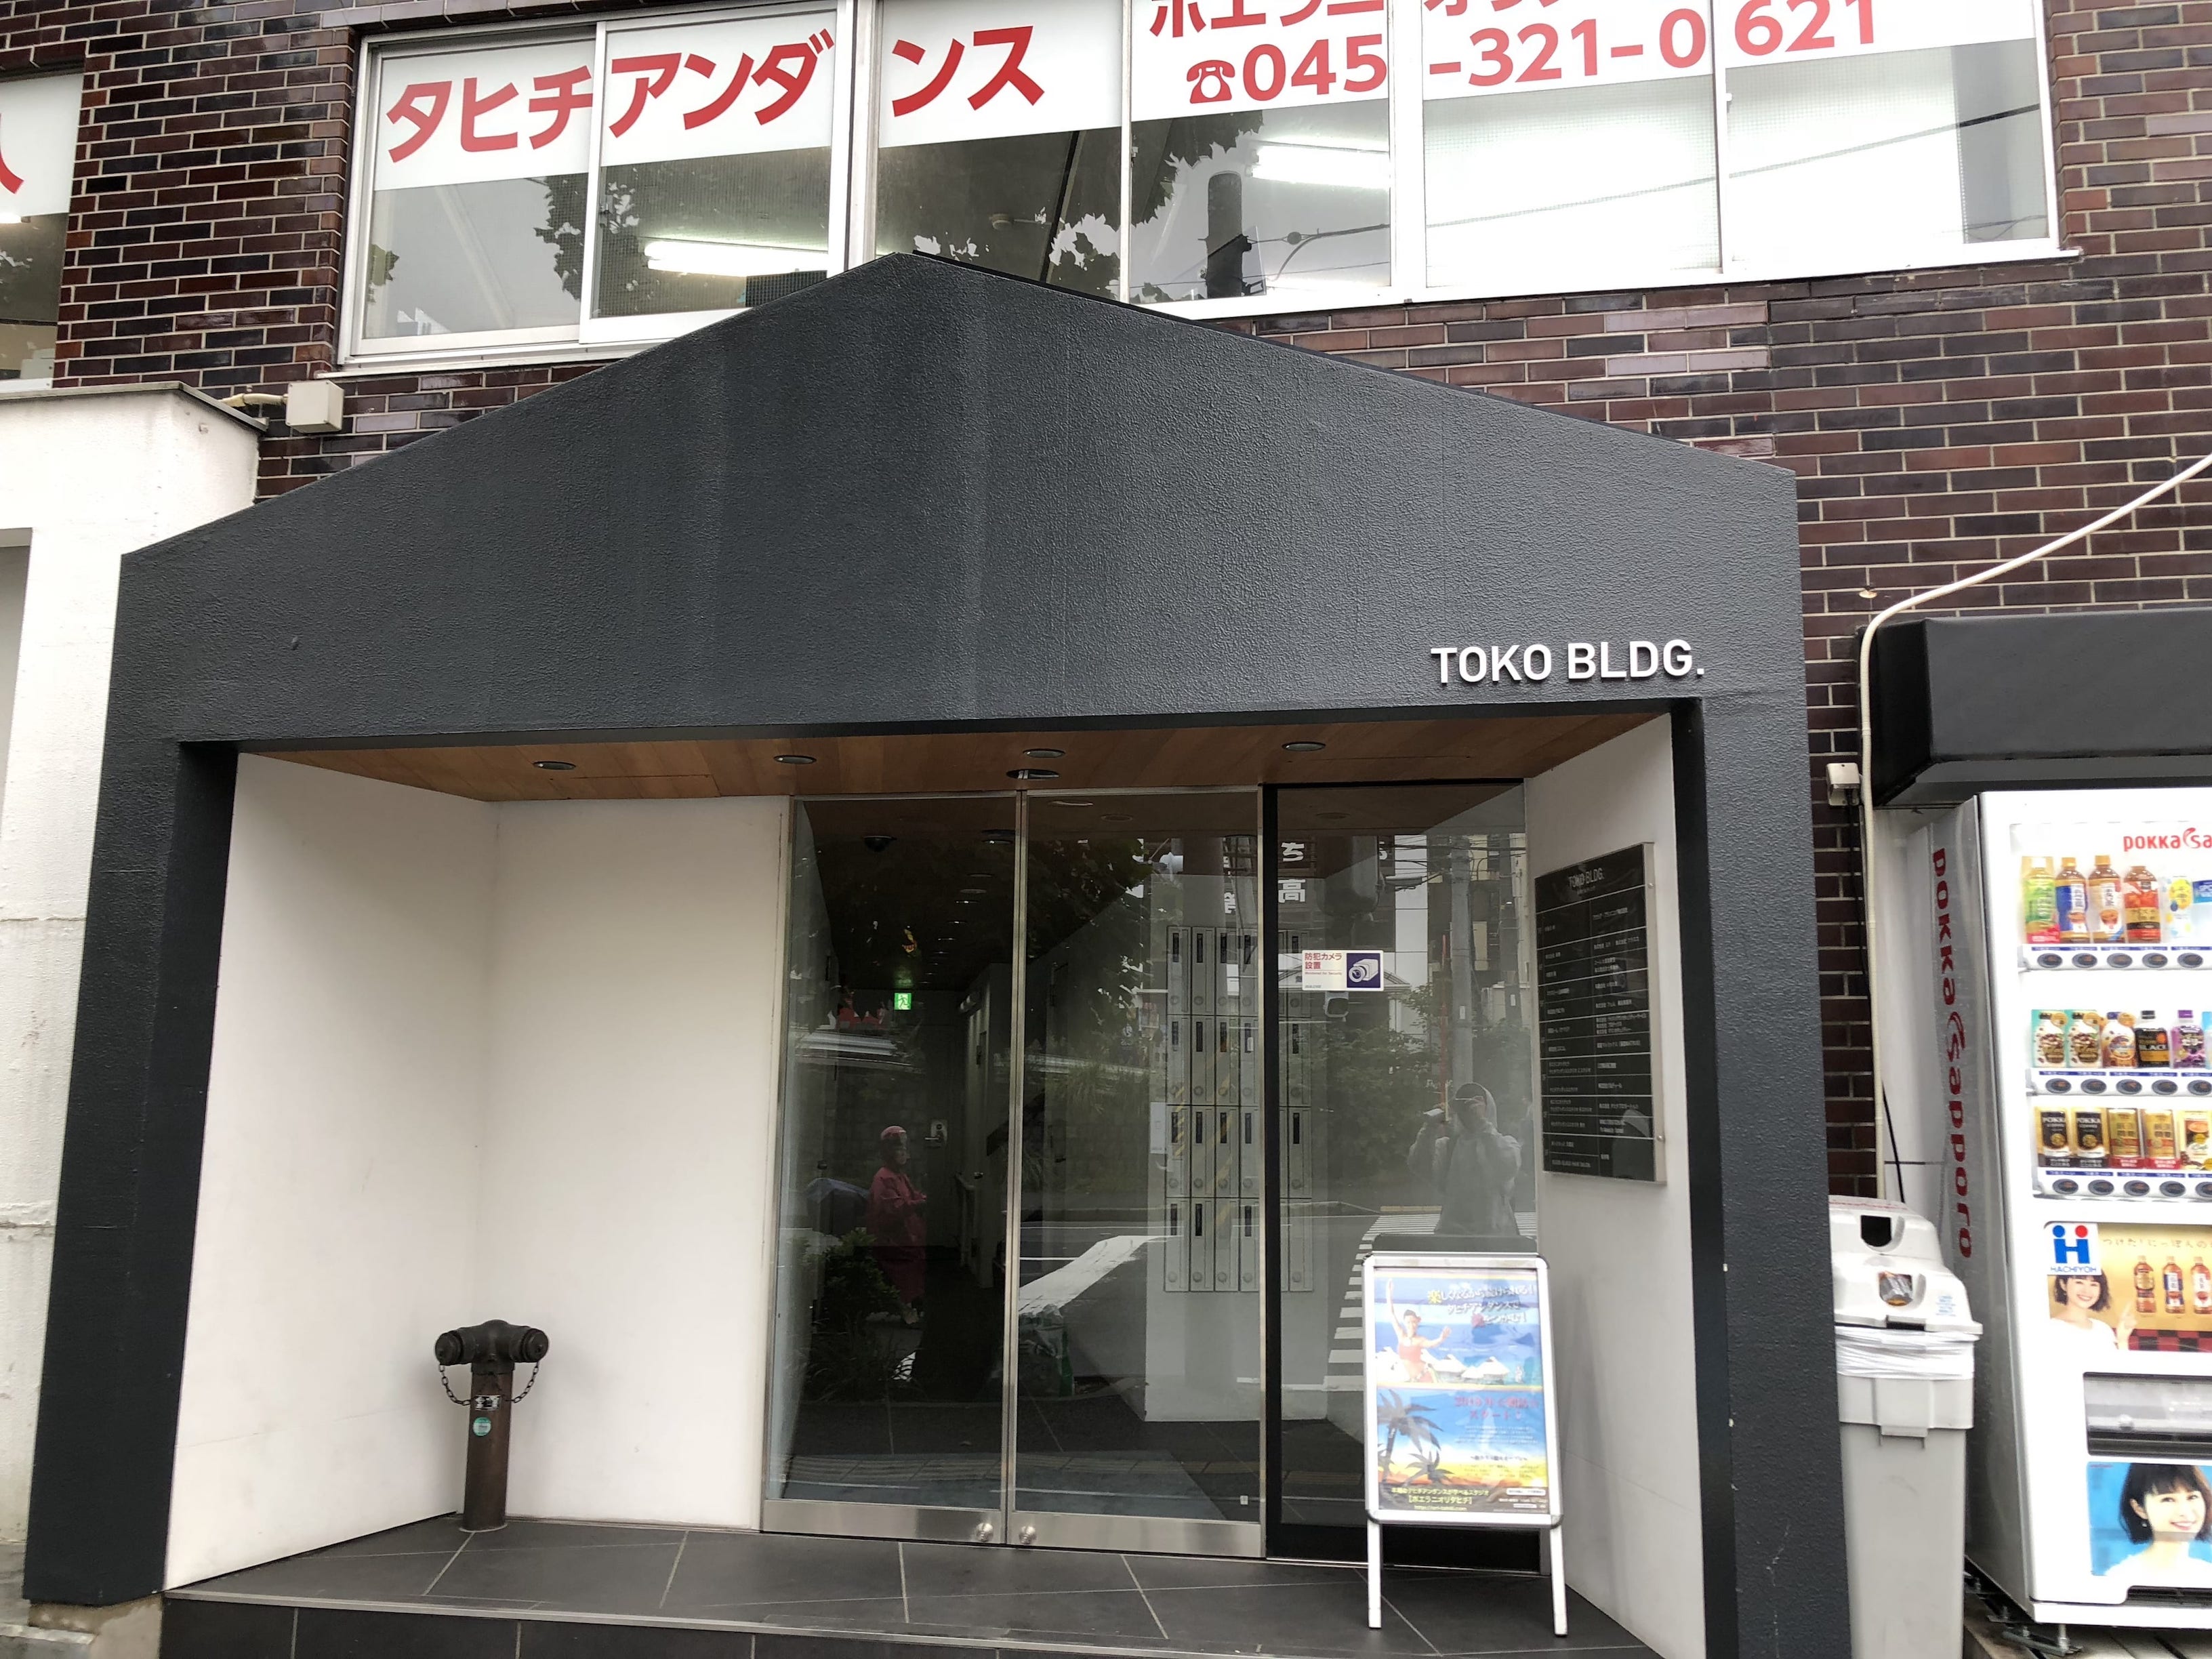 30メートルほど進むと左手に現れる「TOKOビル」の５Fに横浜西口店があります。「ほっともっと」が目印です。